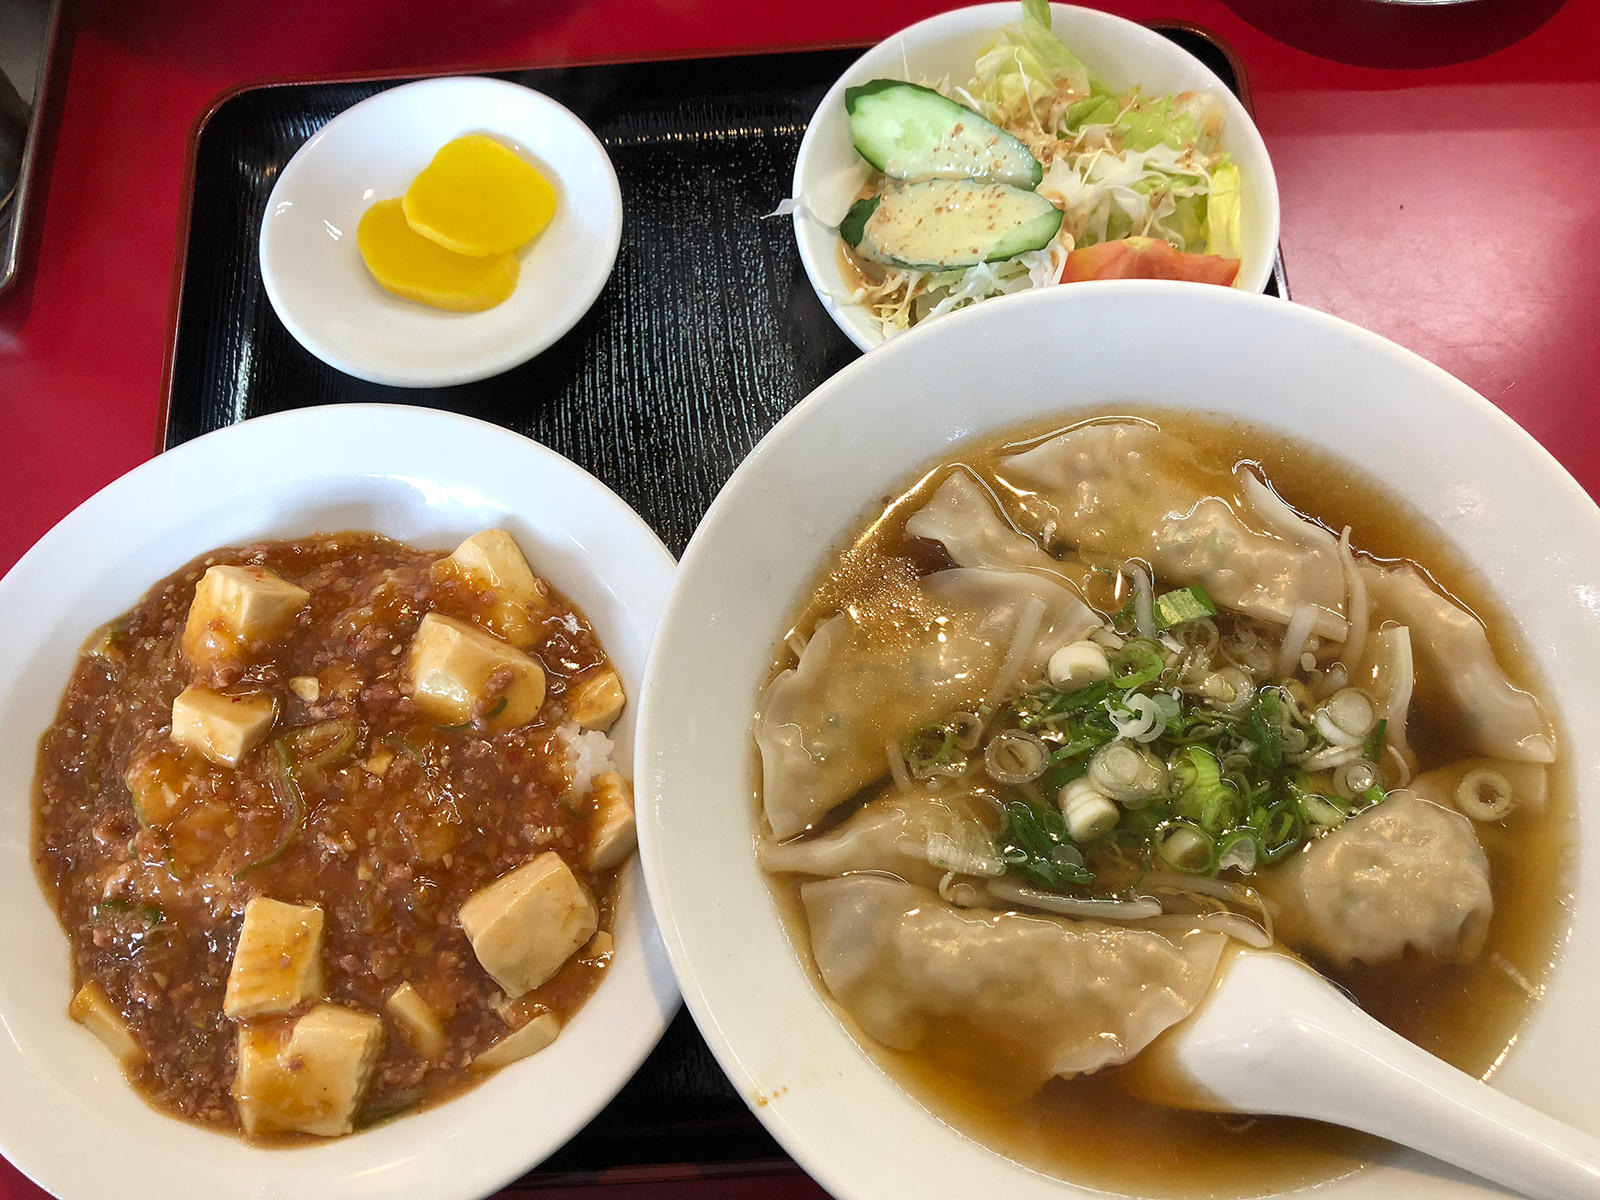 「中華料理 龍貴」の麻婆飯と水餃子のランチ @中小田井